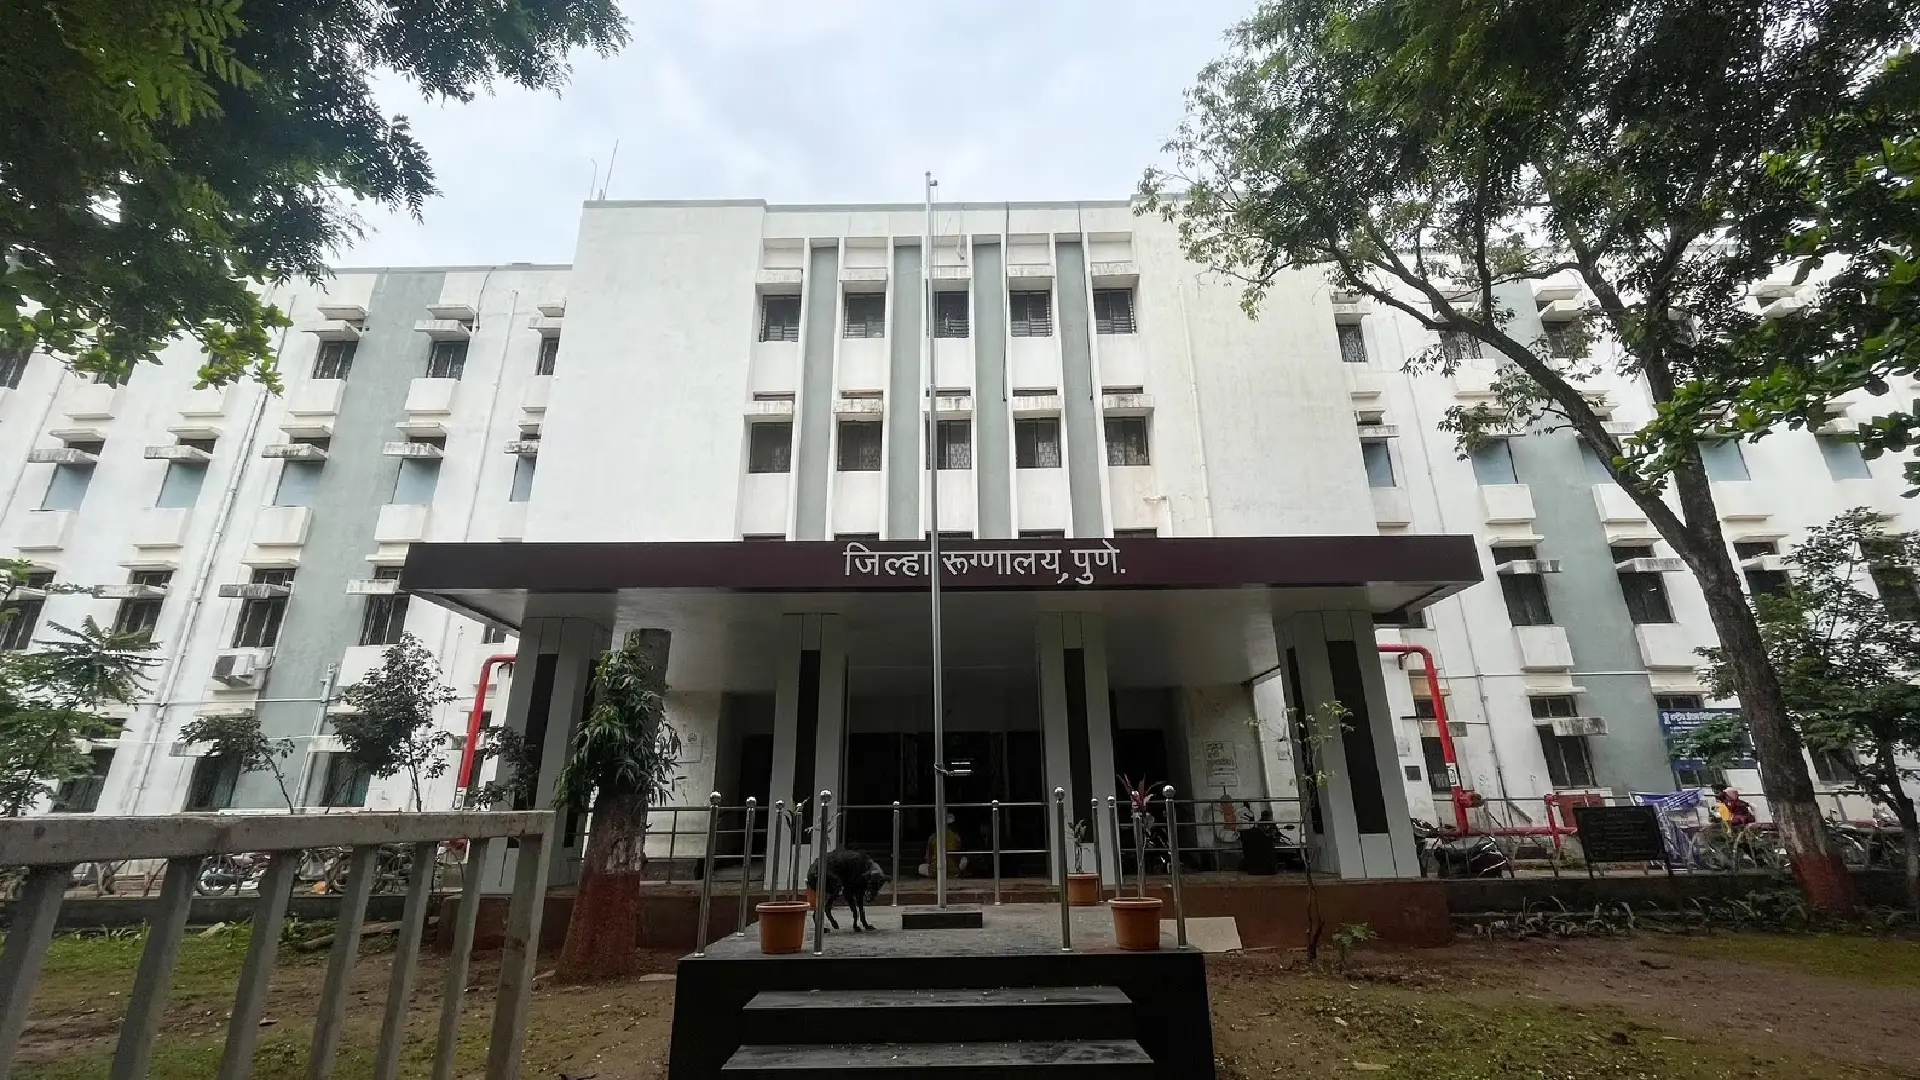 Aundh Civil Hospital